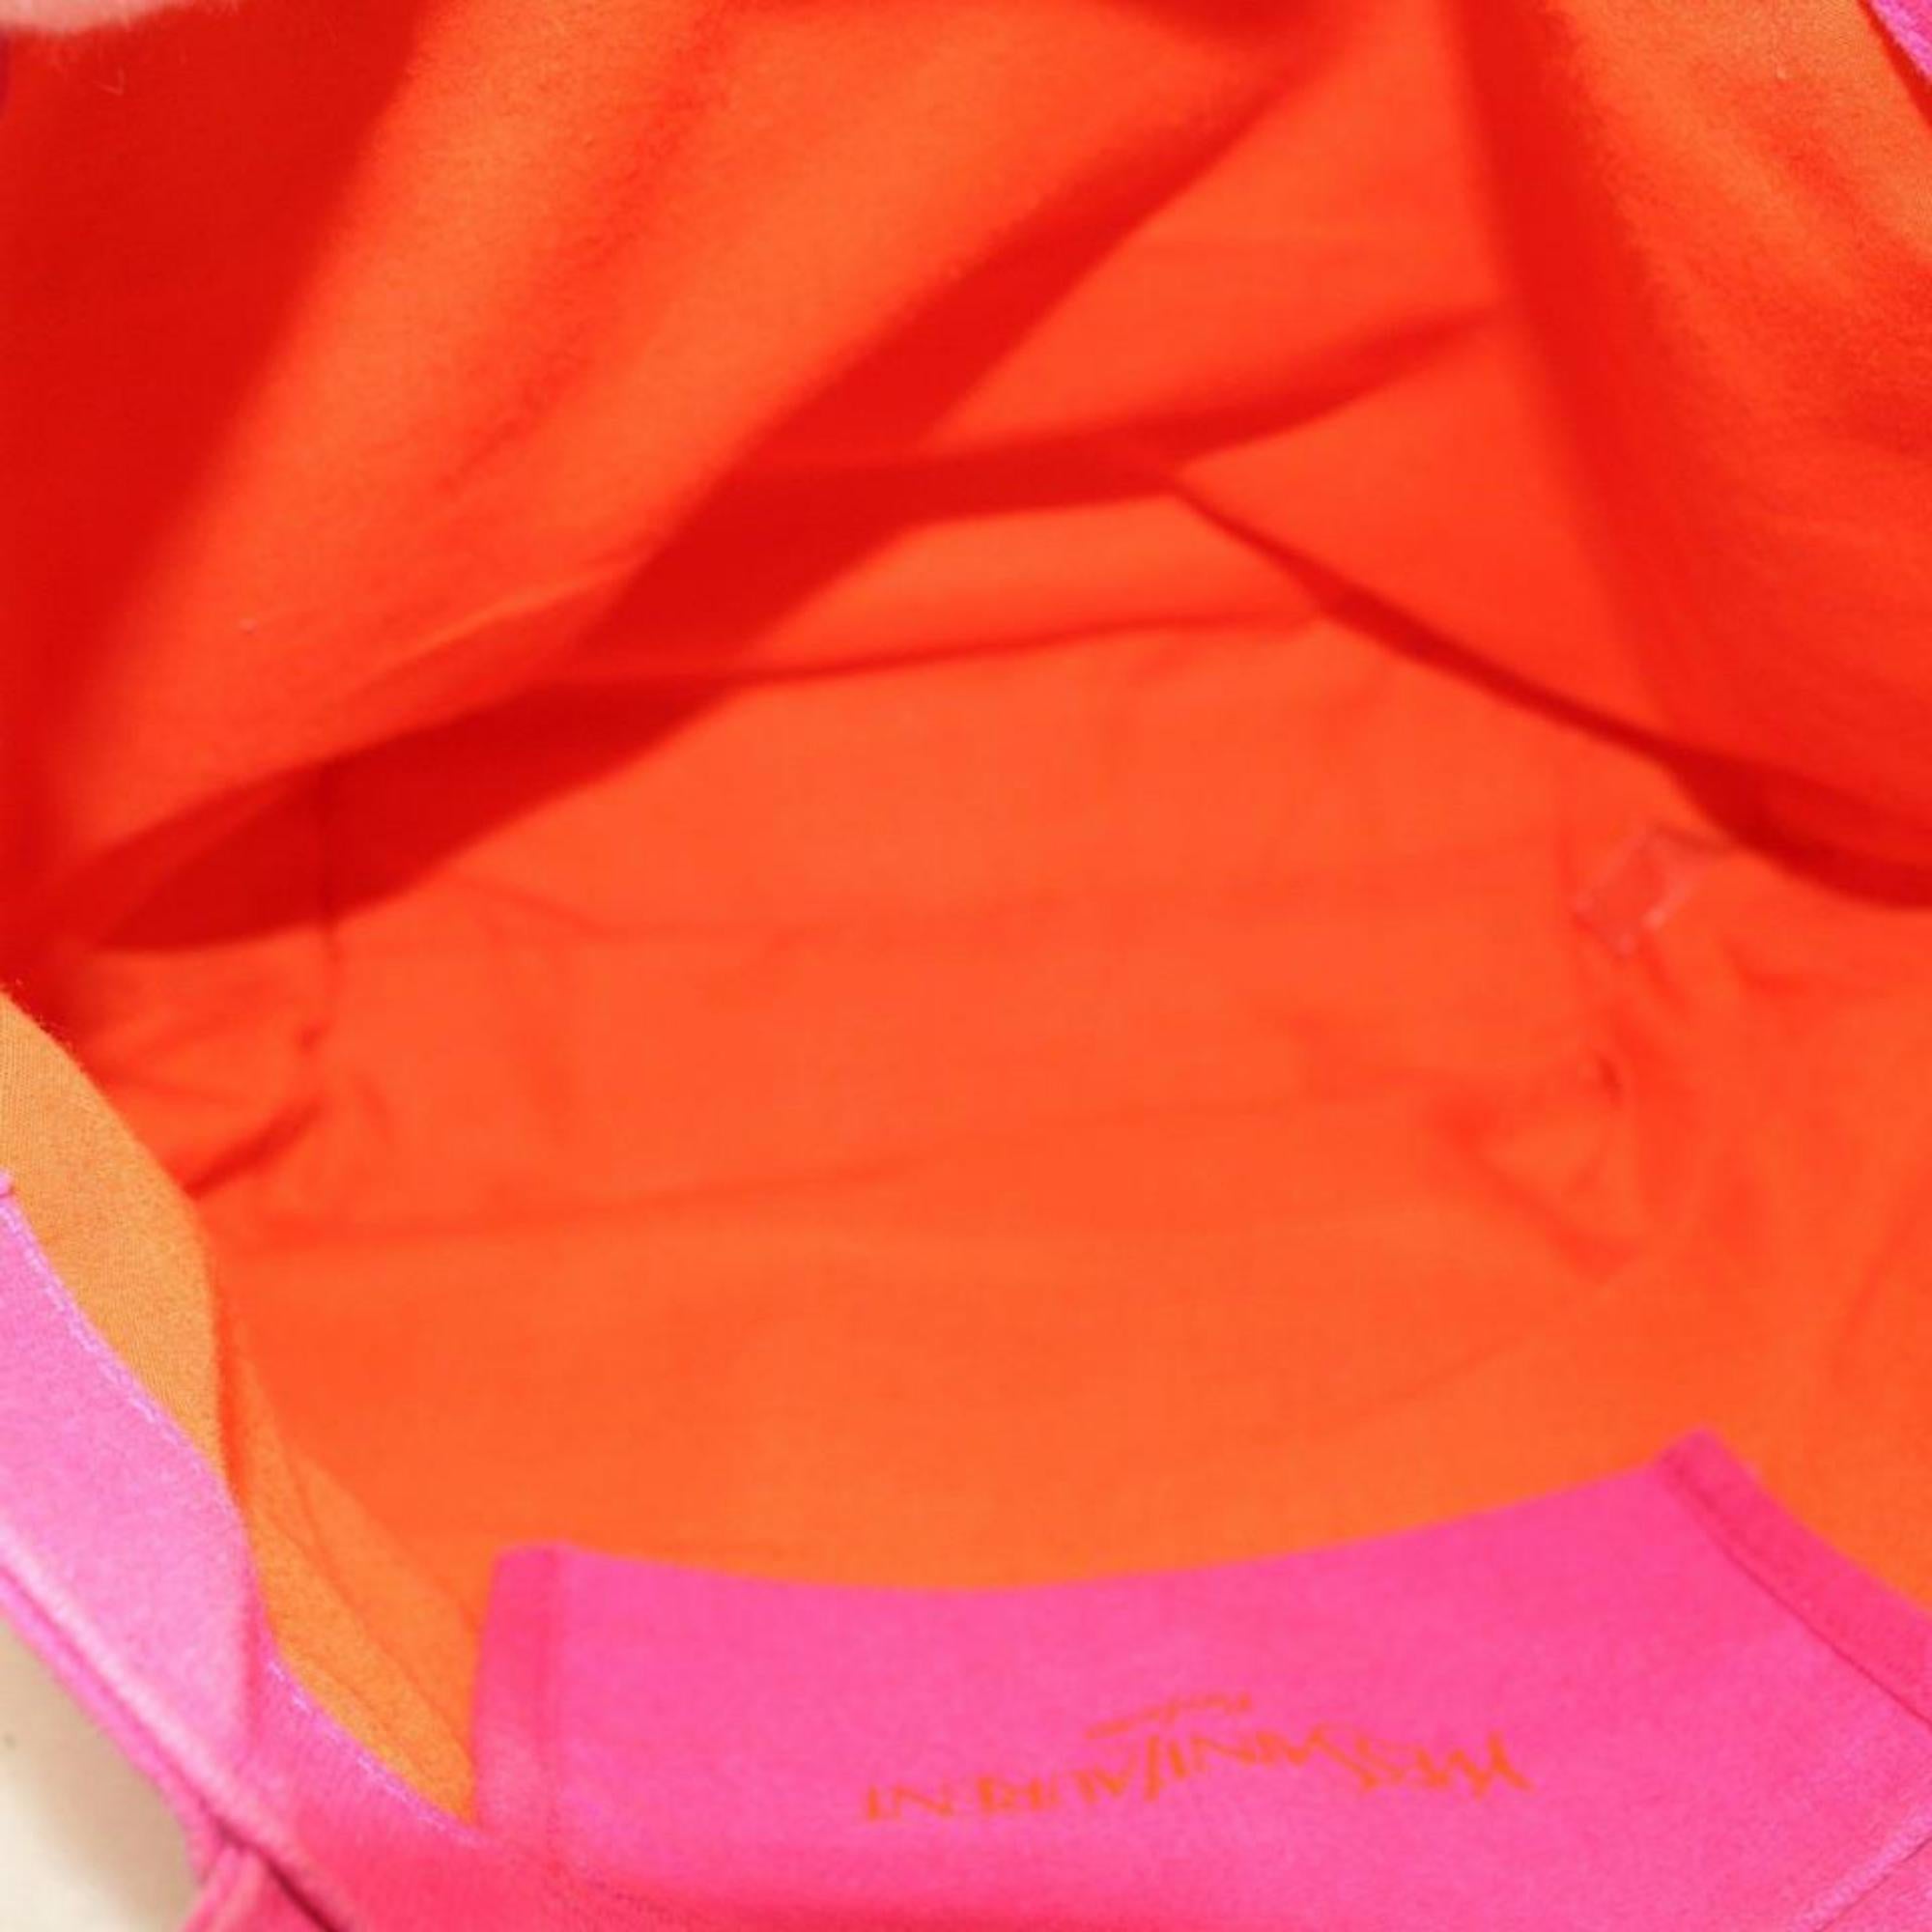 Women's Saint Laurent Shopping Bag Parfums Edition Shopper 869749 Pink Canvas Tote For Sale